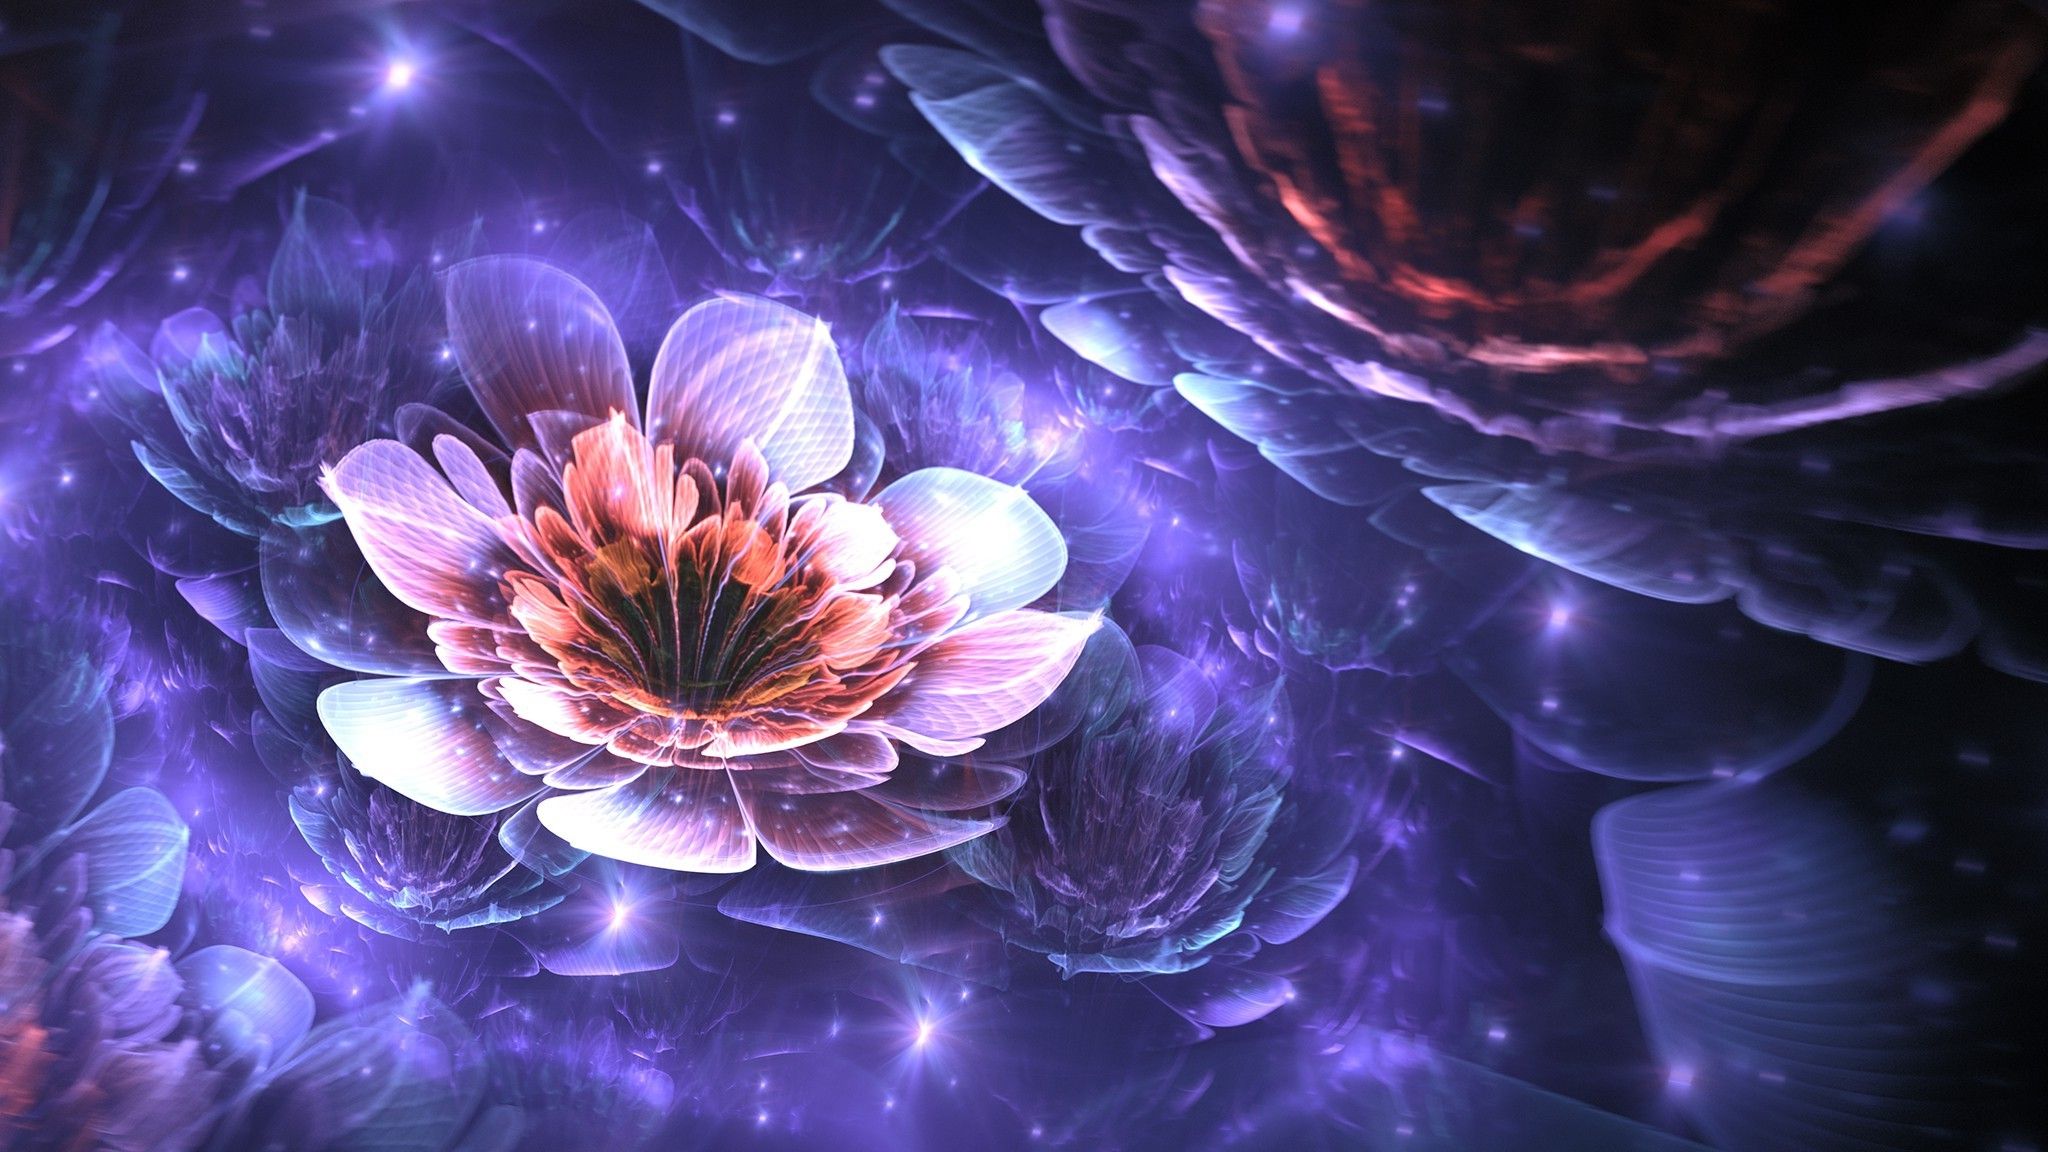 3D Background Flowers Best 3D Wallpaper For Desktop Flower Digital Art HD Wallpaper